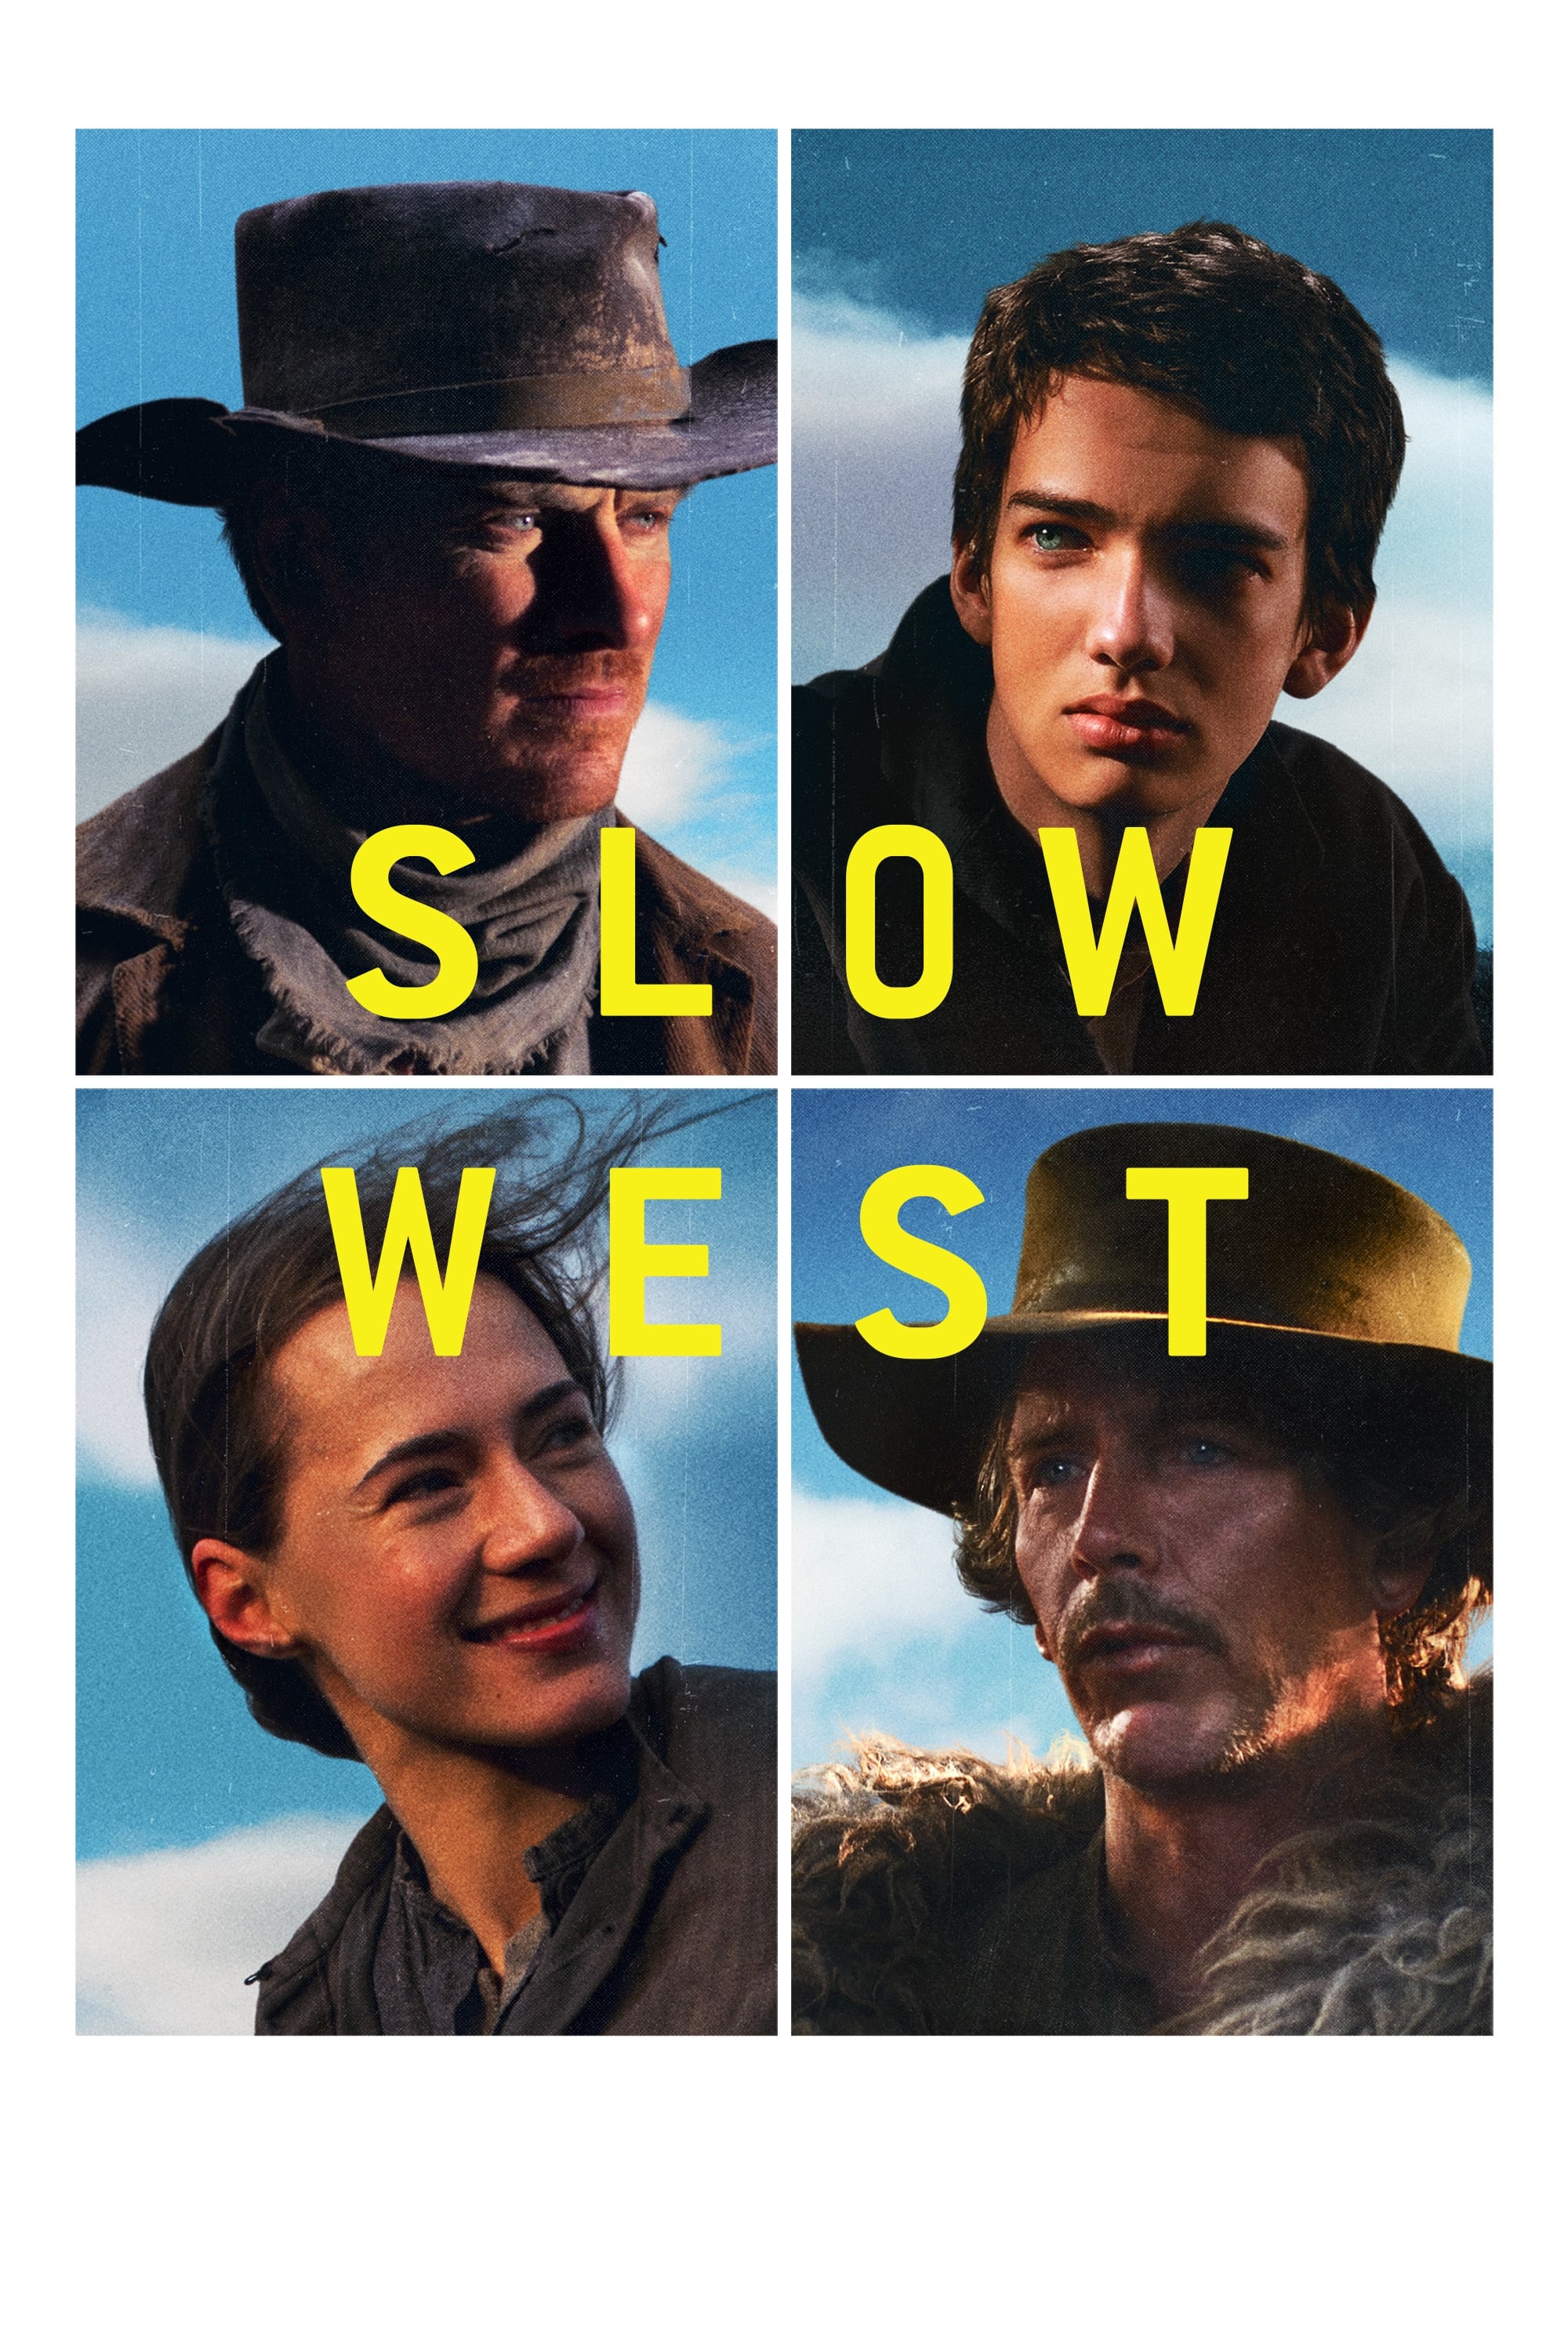 Viễn Tây Thiên Đường - Slow West (2015)